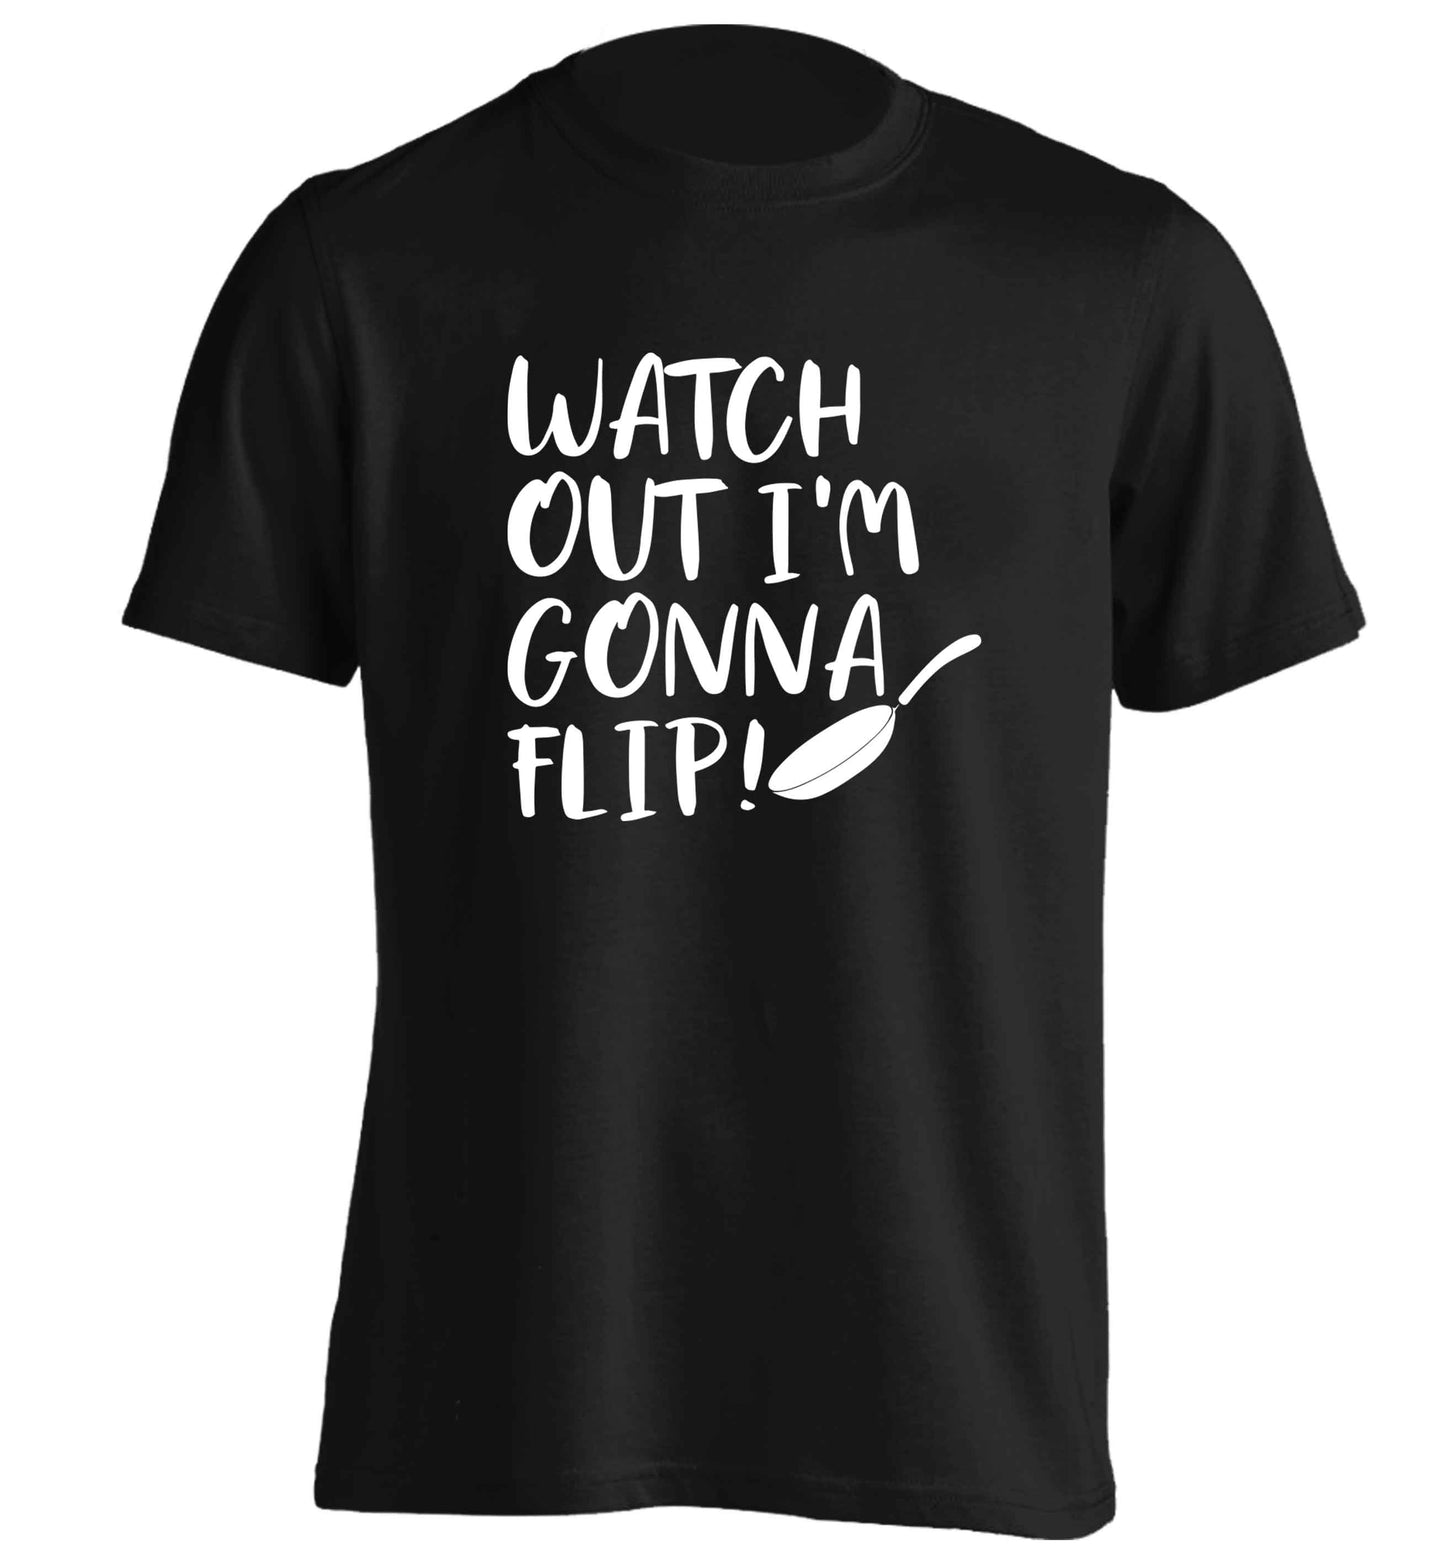 Watch out I'm gonna flip! adults unisex black Tshirt 2XL